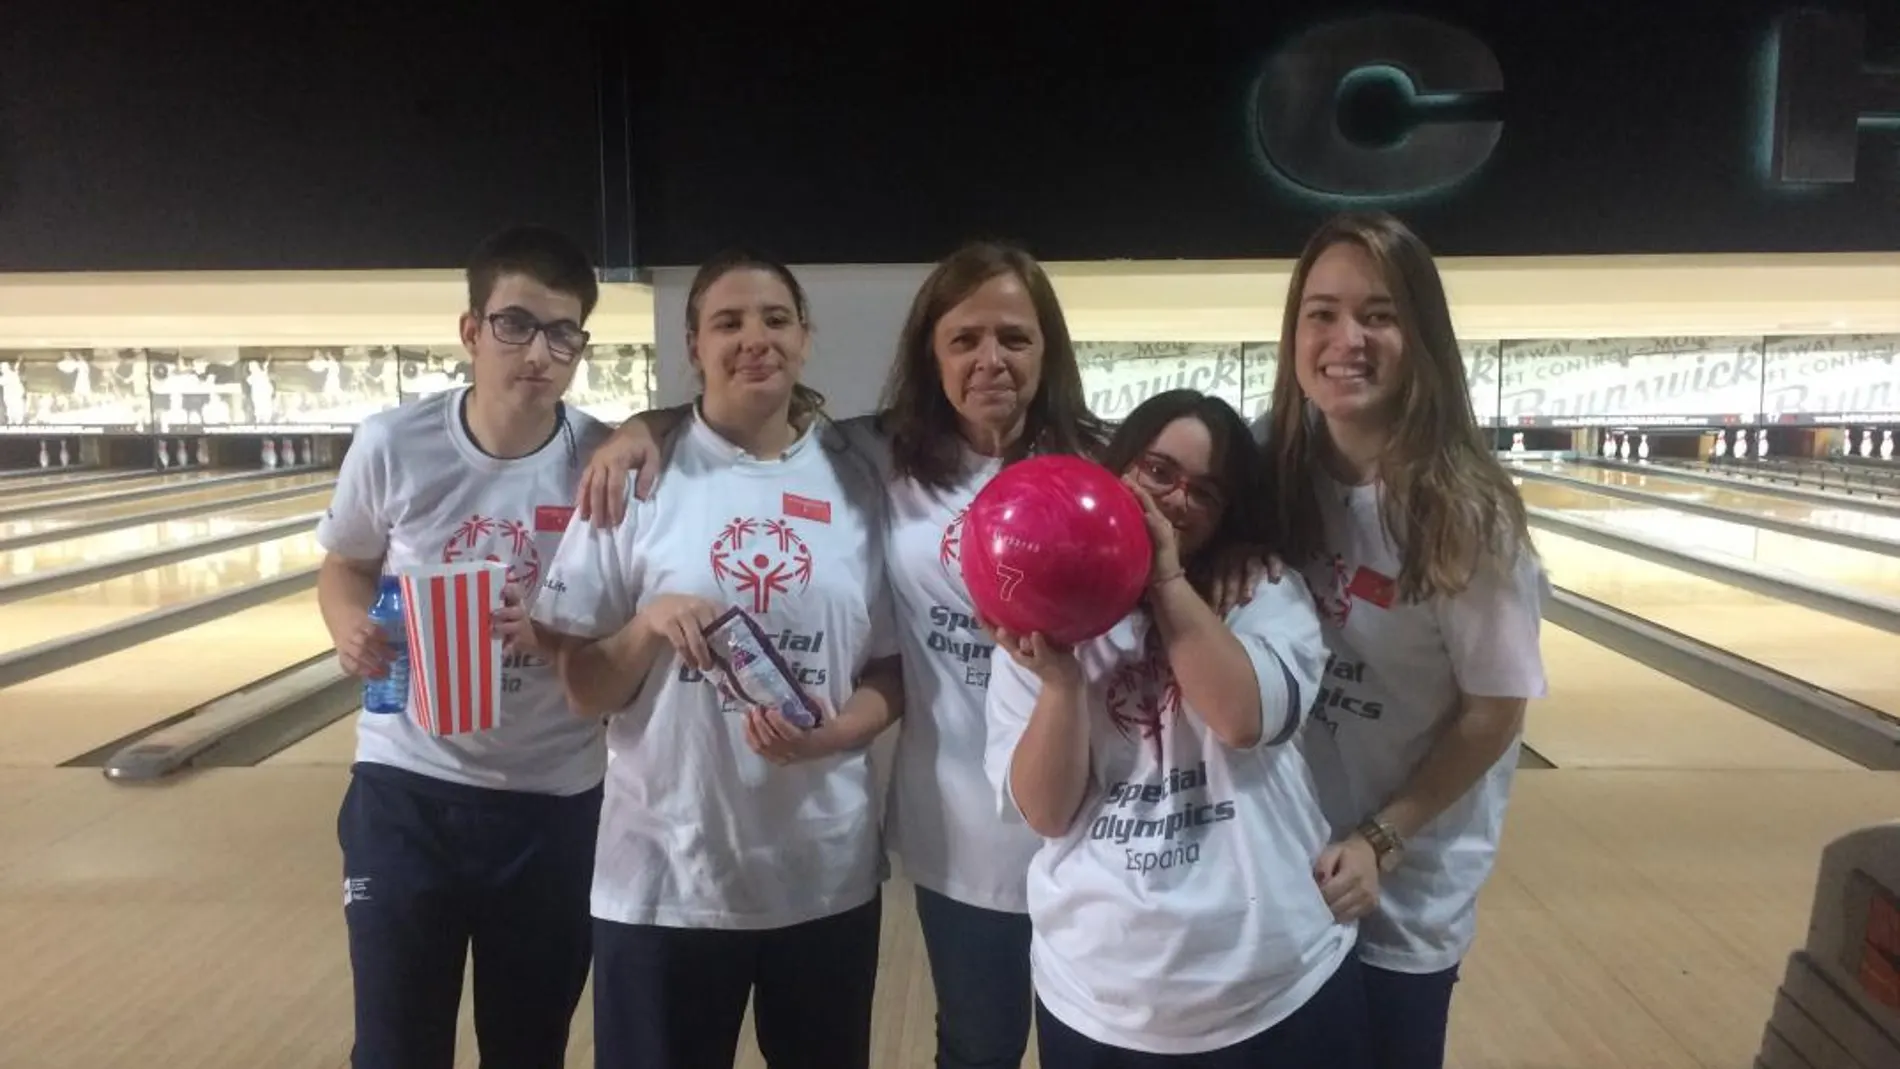 MetLife participa en el I Torneo de Bowling unificado junto con Special Olympics